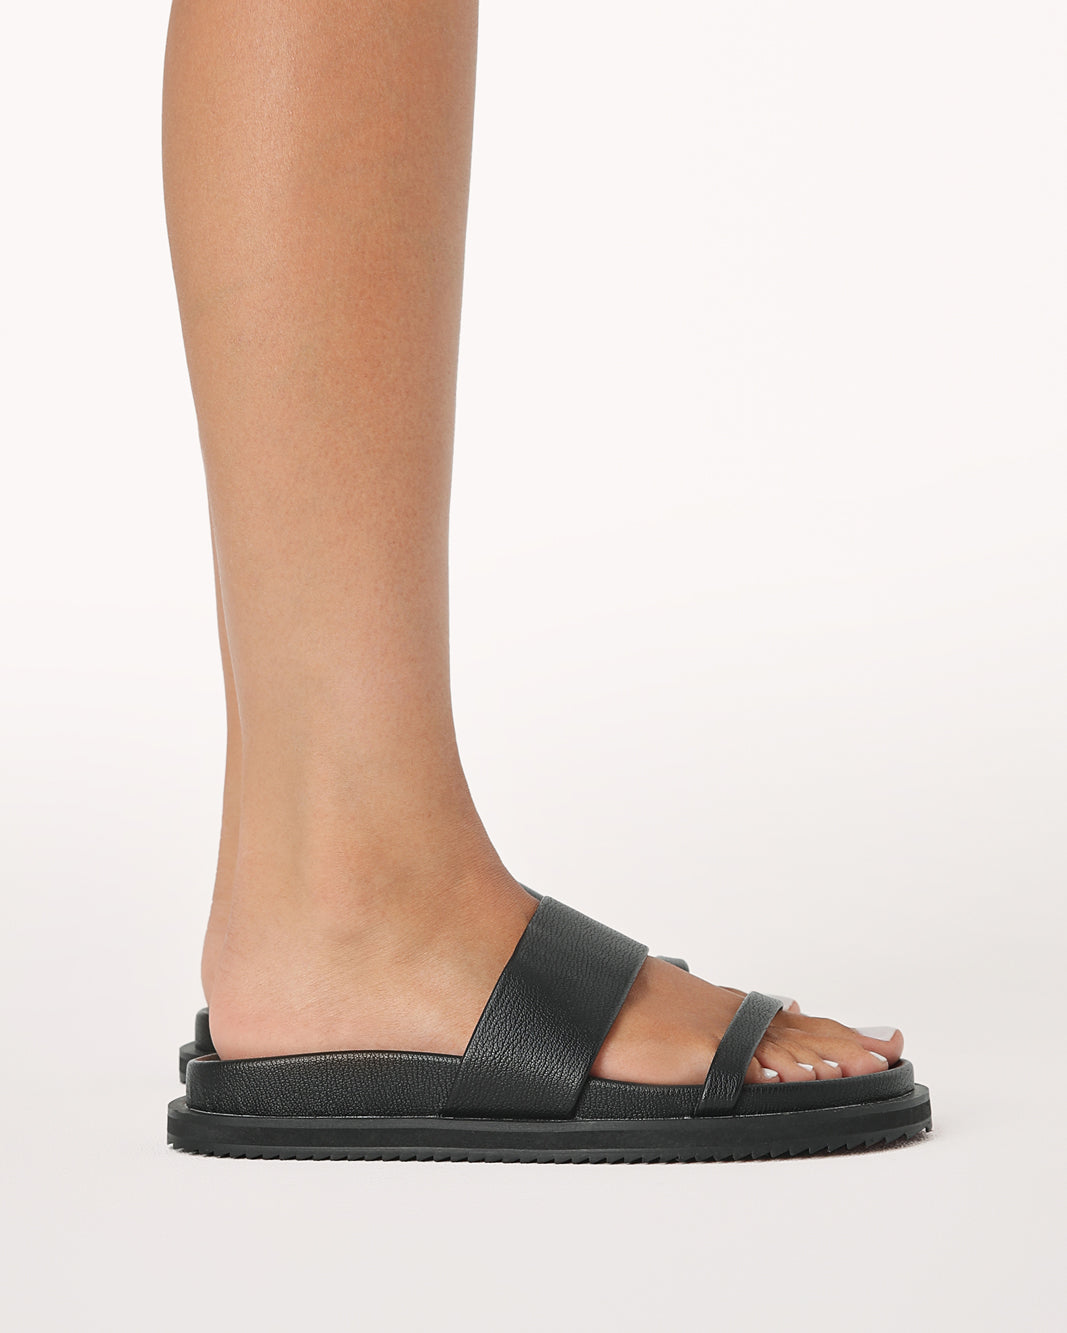 TAMIA - BLACK-Sandals-Billini-Billini